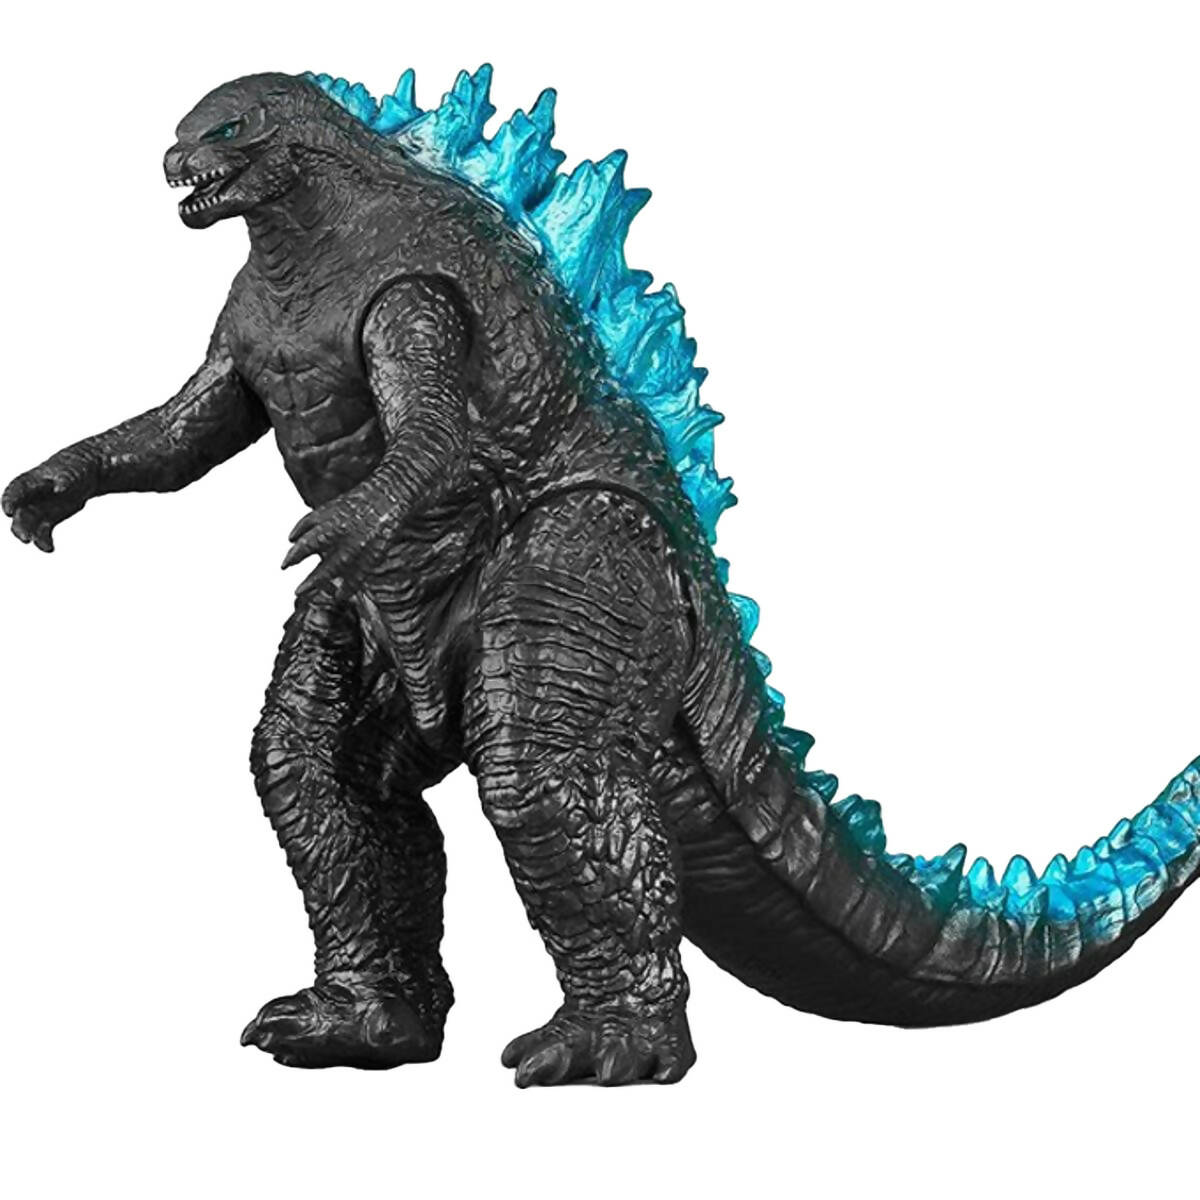 Godzilla Monster Models Kids Action Figures - Big size Blue& black